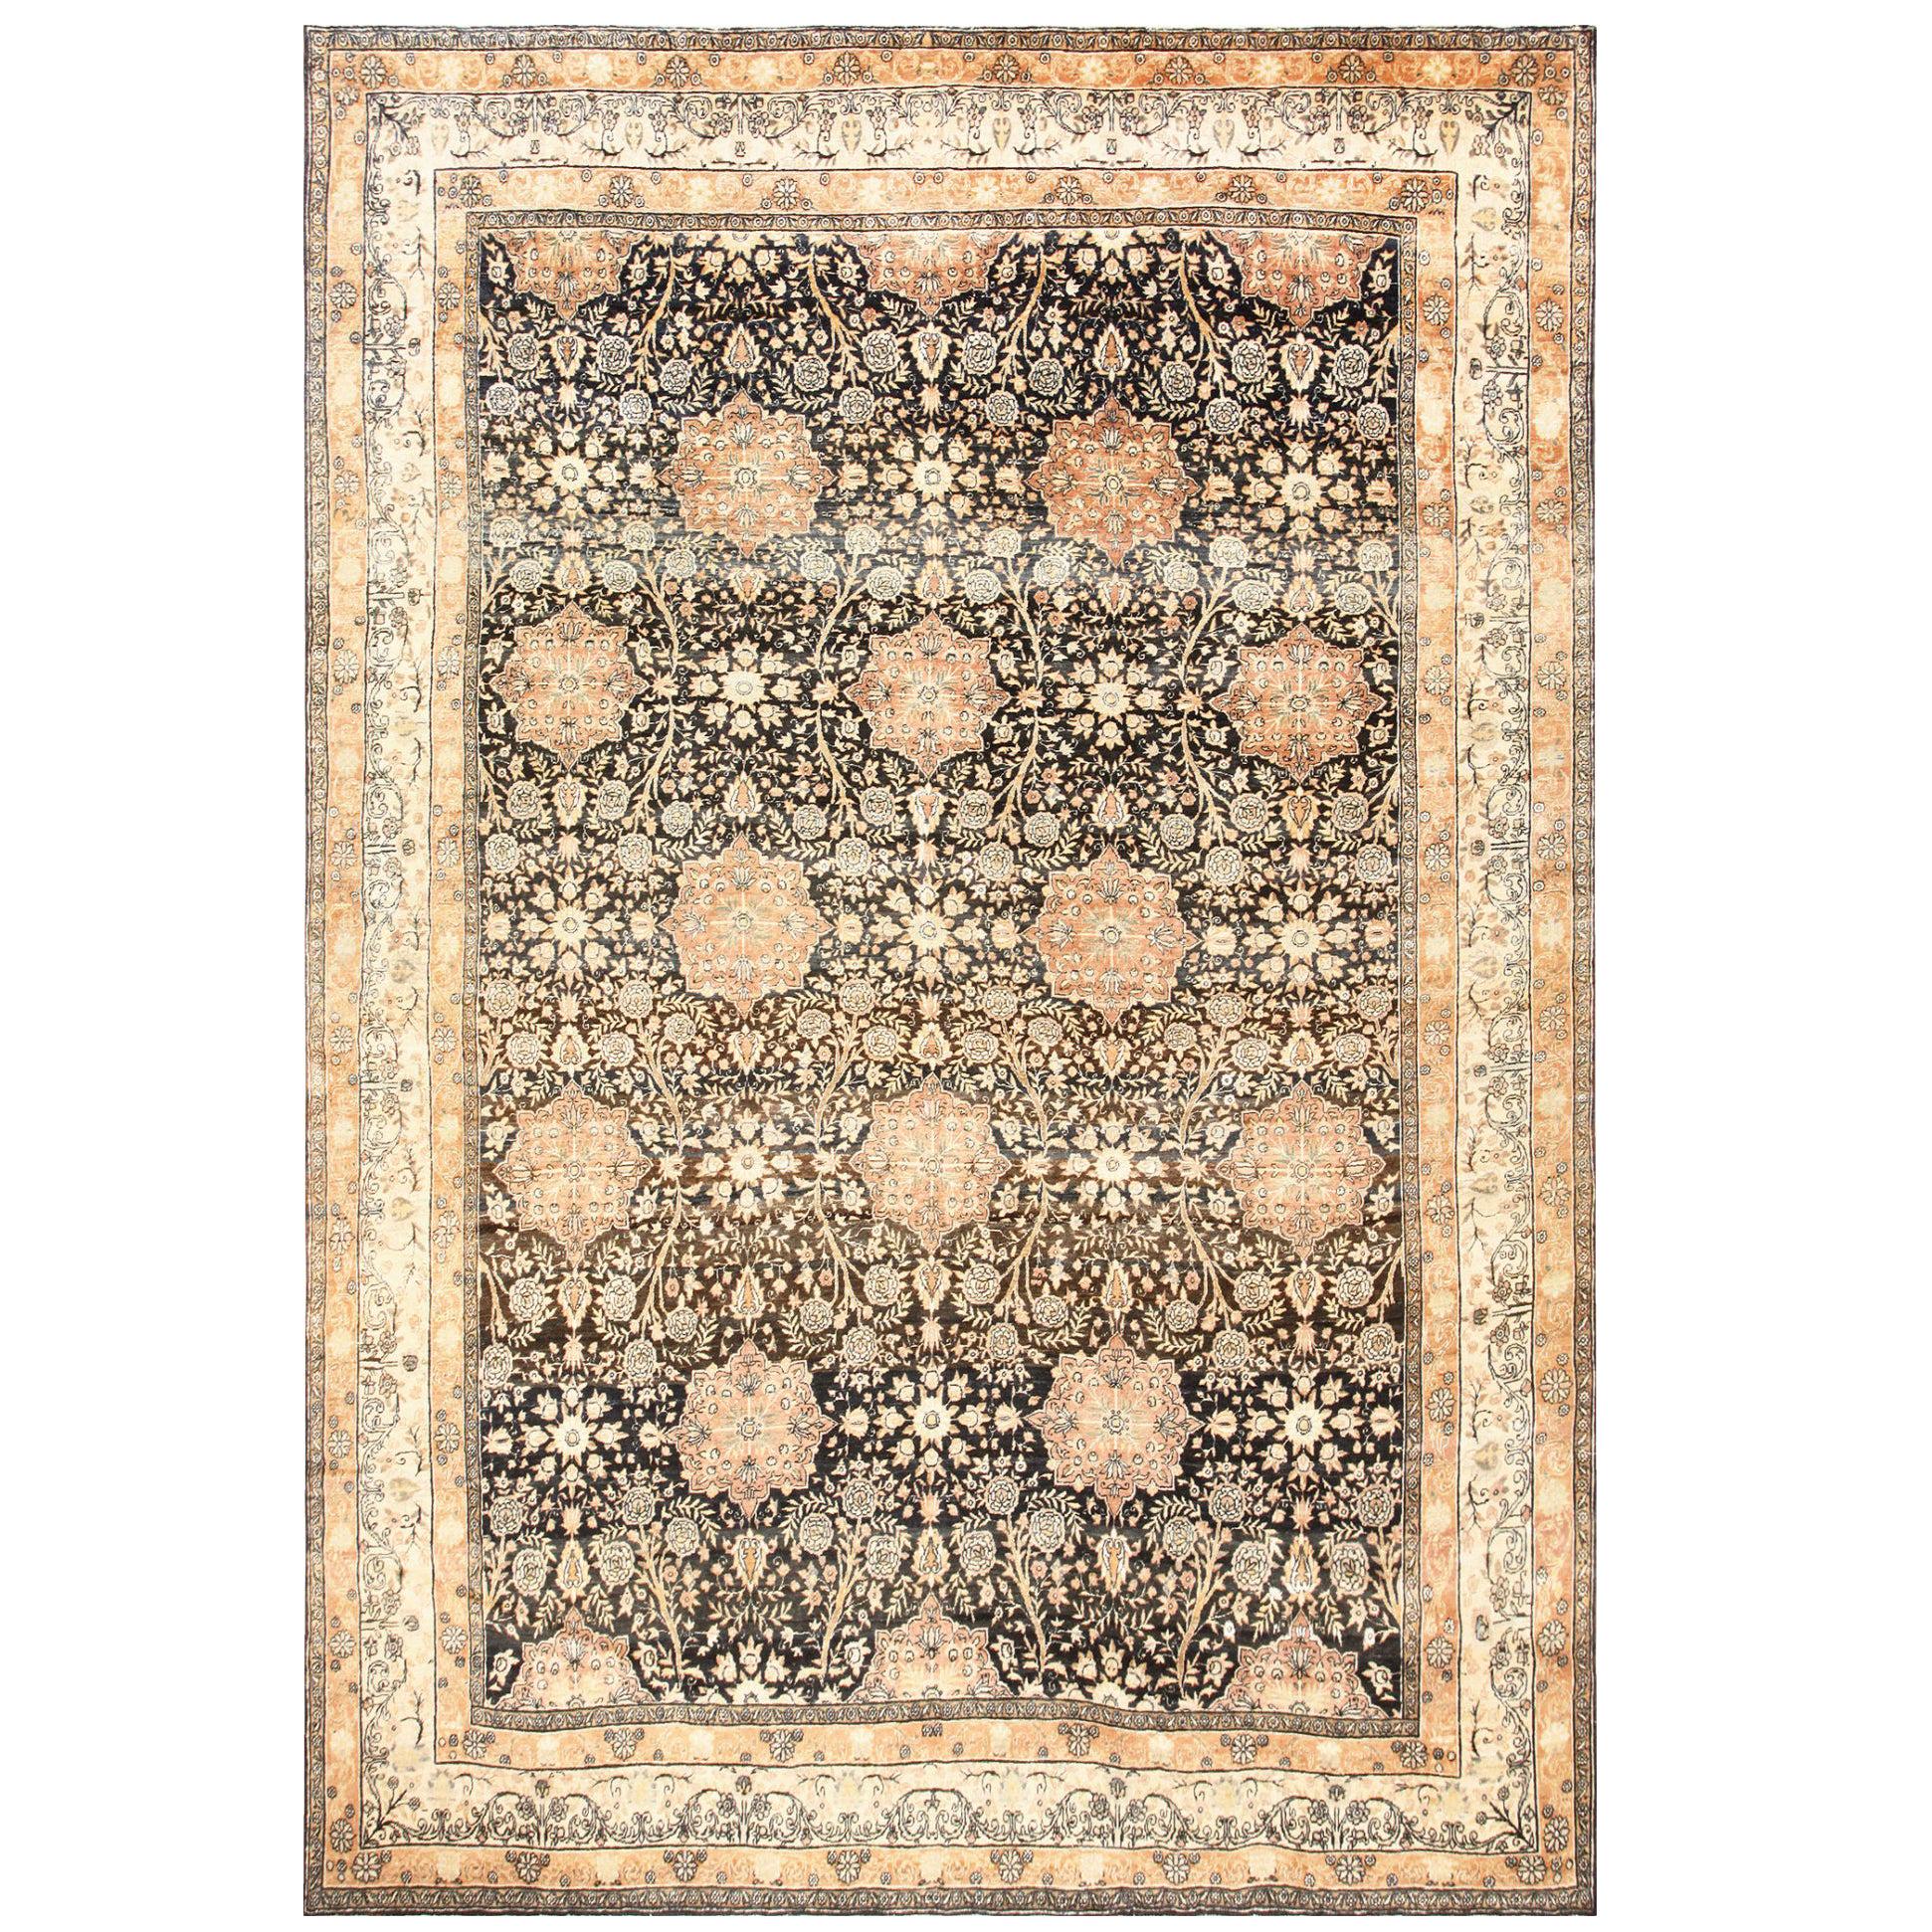 Antiker persischer Kerman-Teppich in Anthrazit. 9 Fuß 9 Zoll x 14 Fuß 6 Zoll